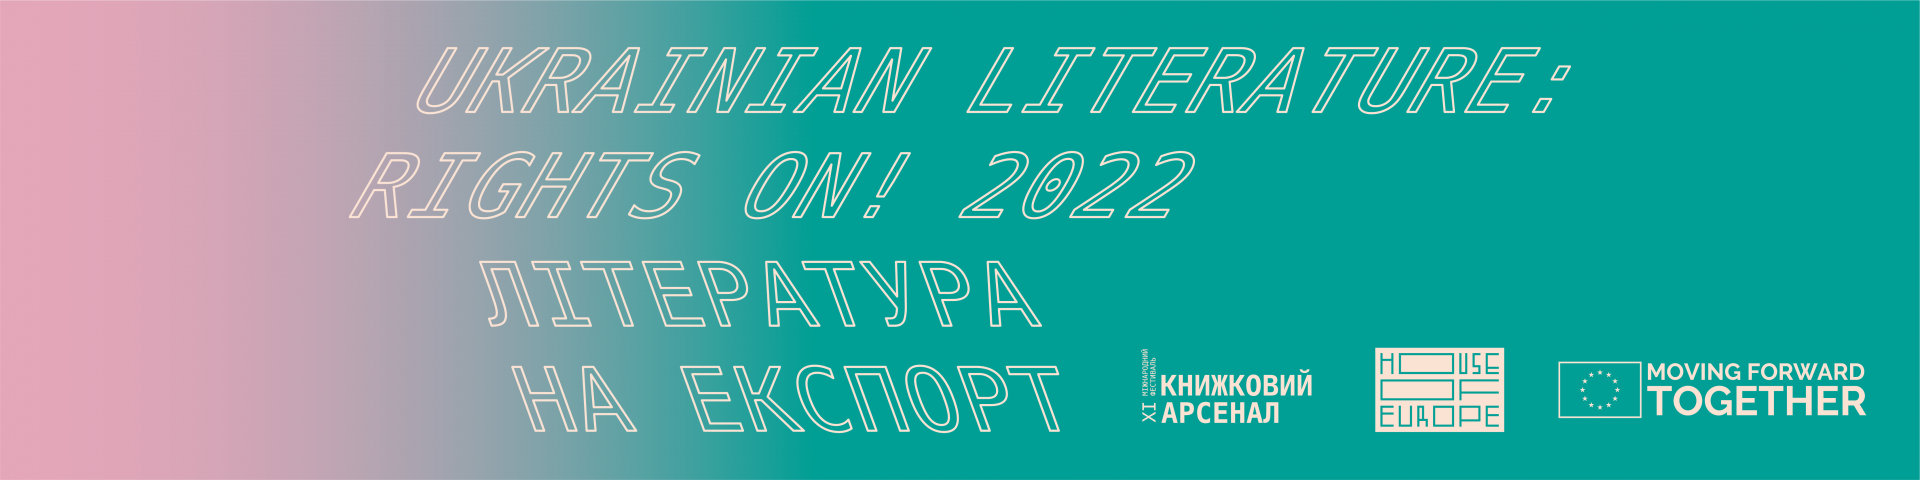 Ukrainian Literature: Rights On! 2022